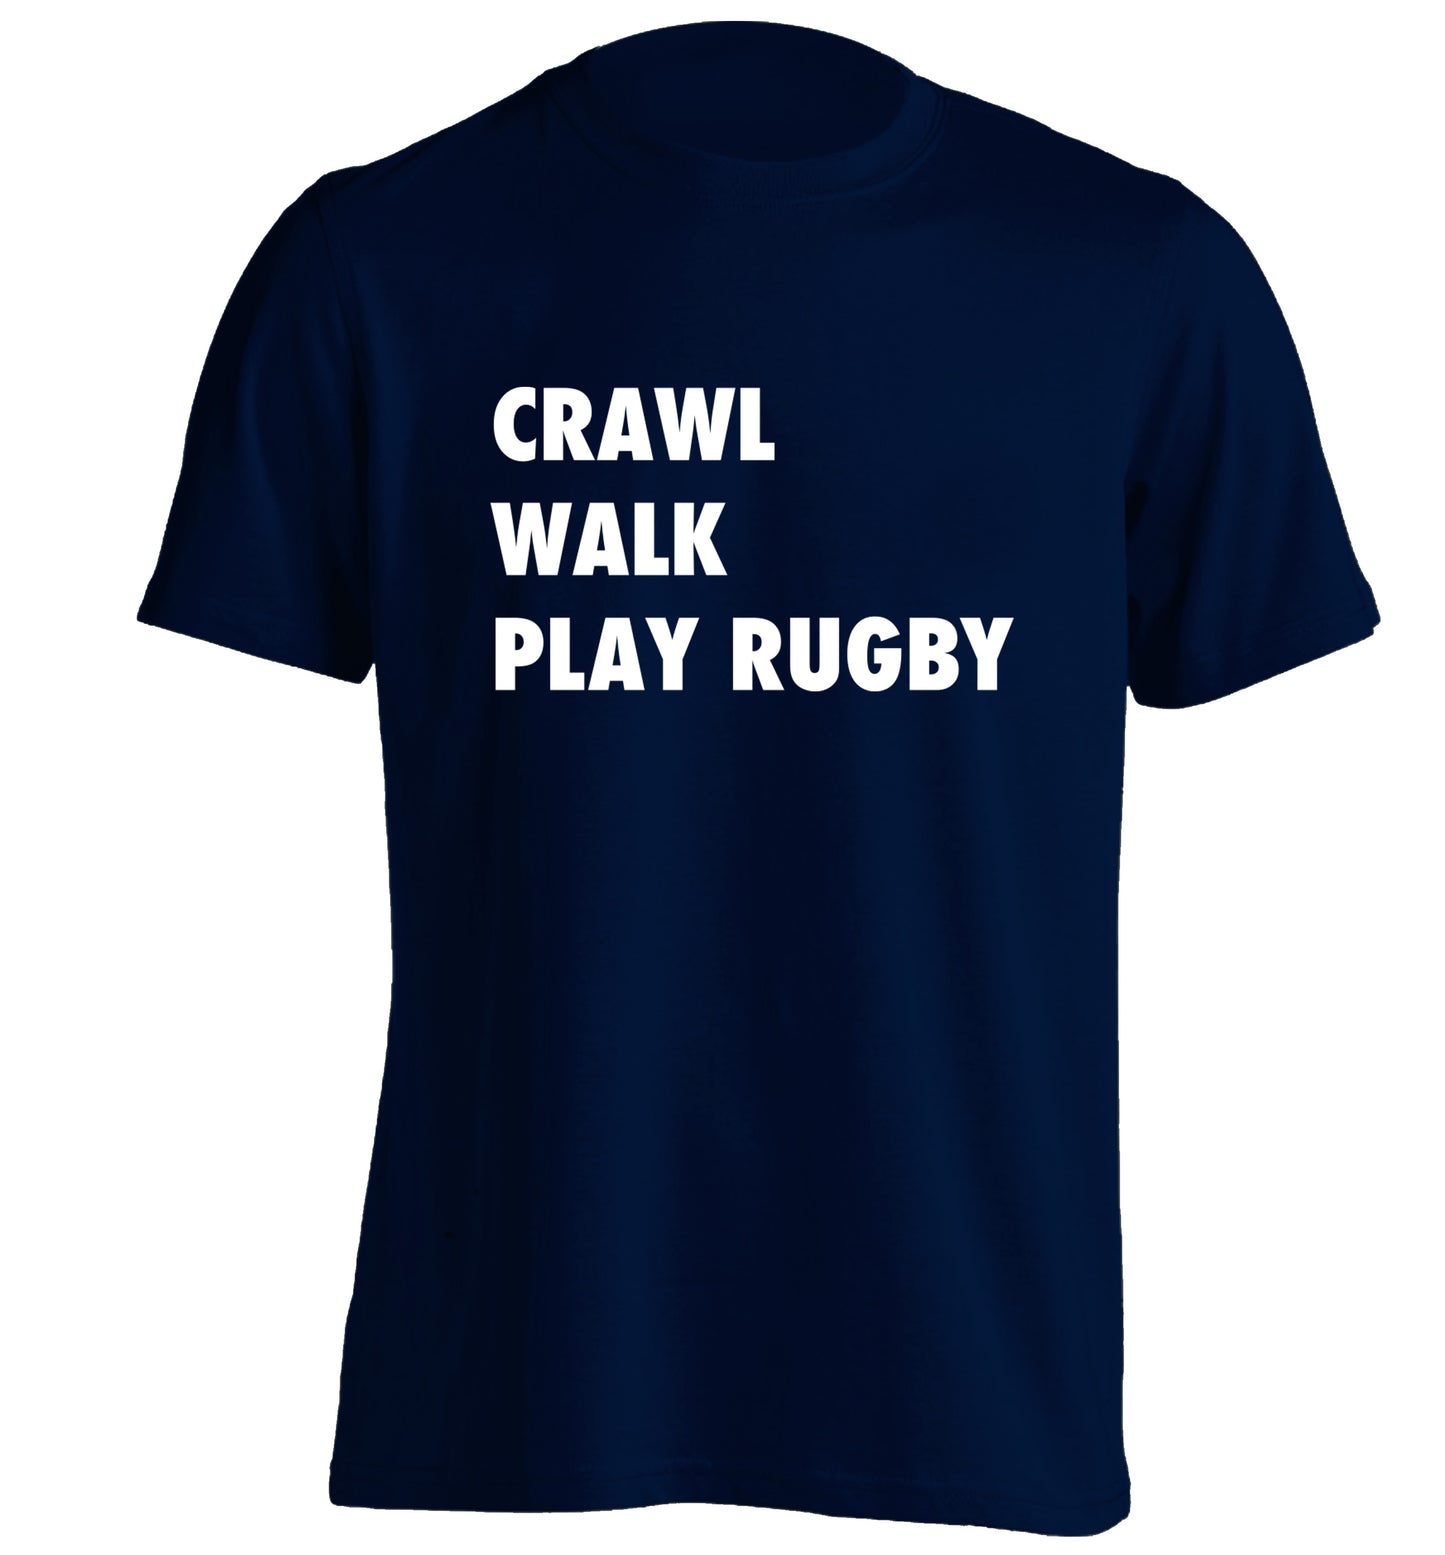 Eat, sleep, play rugby adults unisex navy Tshirt 2XL